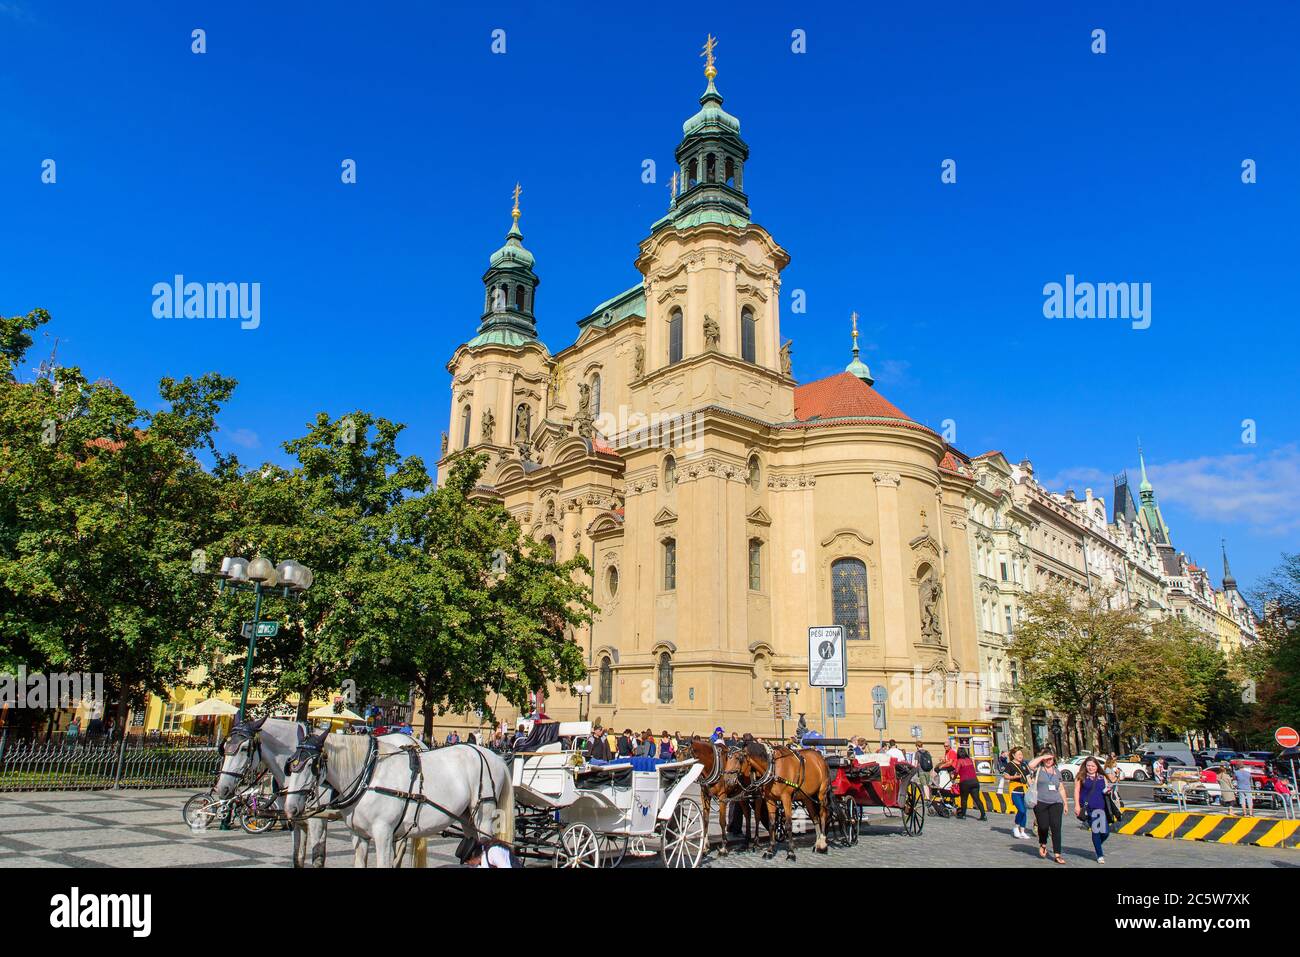 Les gens sur la place de la Vieille ville à Prague, République tchèque Banque D'Images